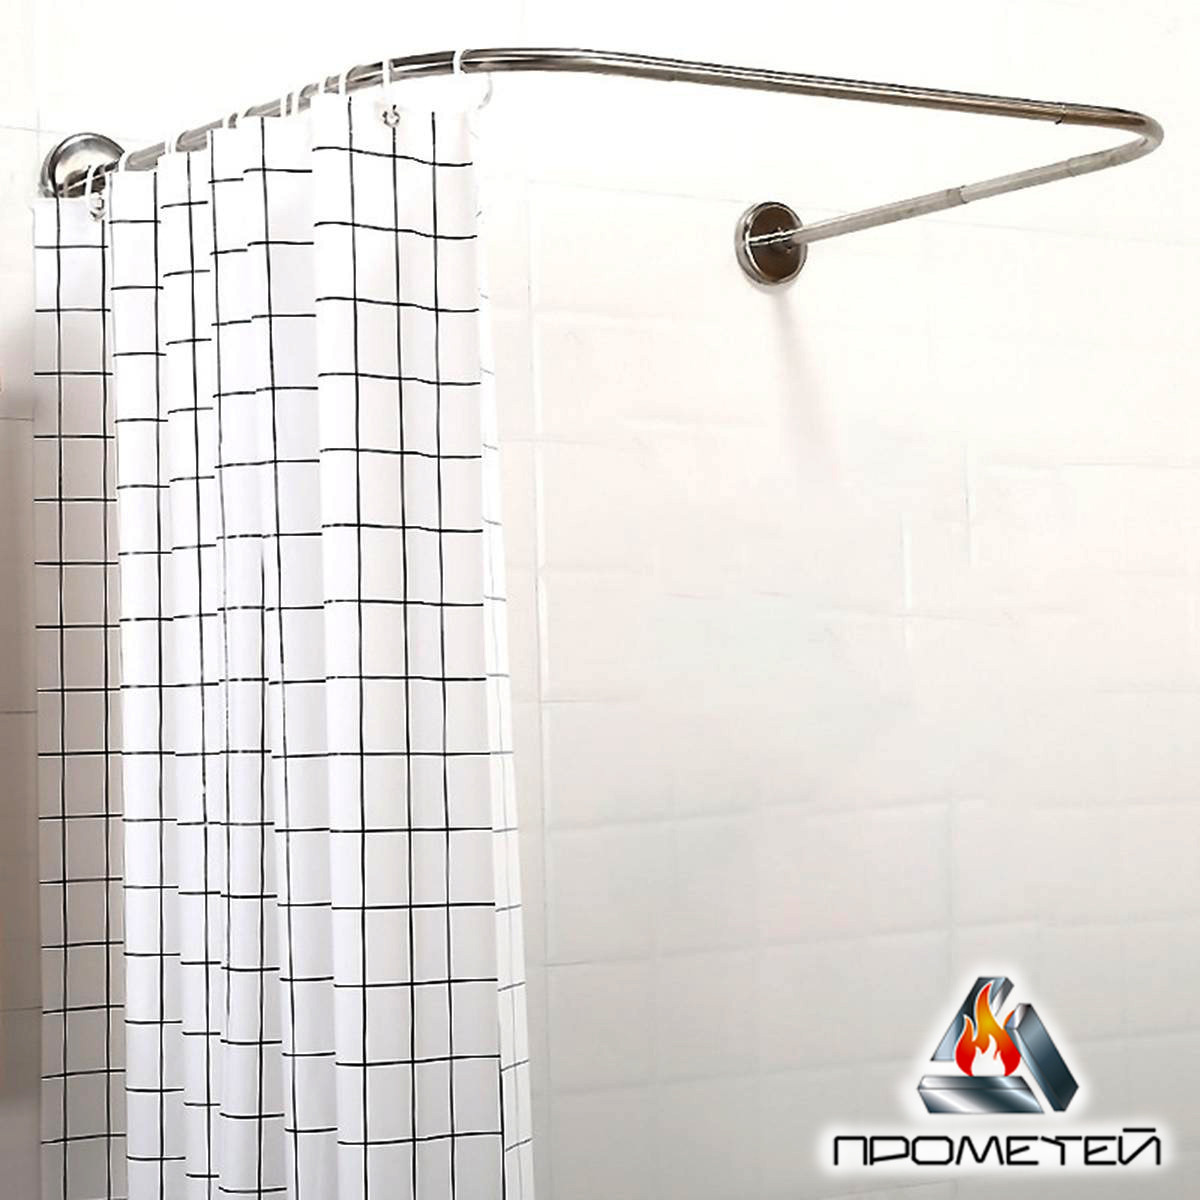 П-подібний тримач для душової шторки з нержавіючої сталі для ванної або піддону за індивідуальними розмірами, Ø 20 мм, фото 1